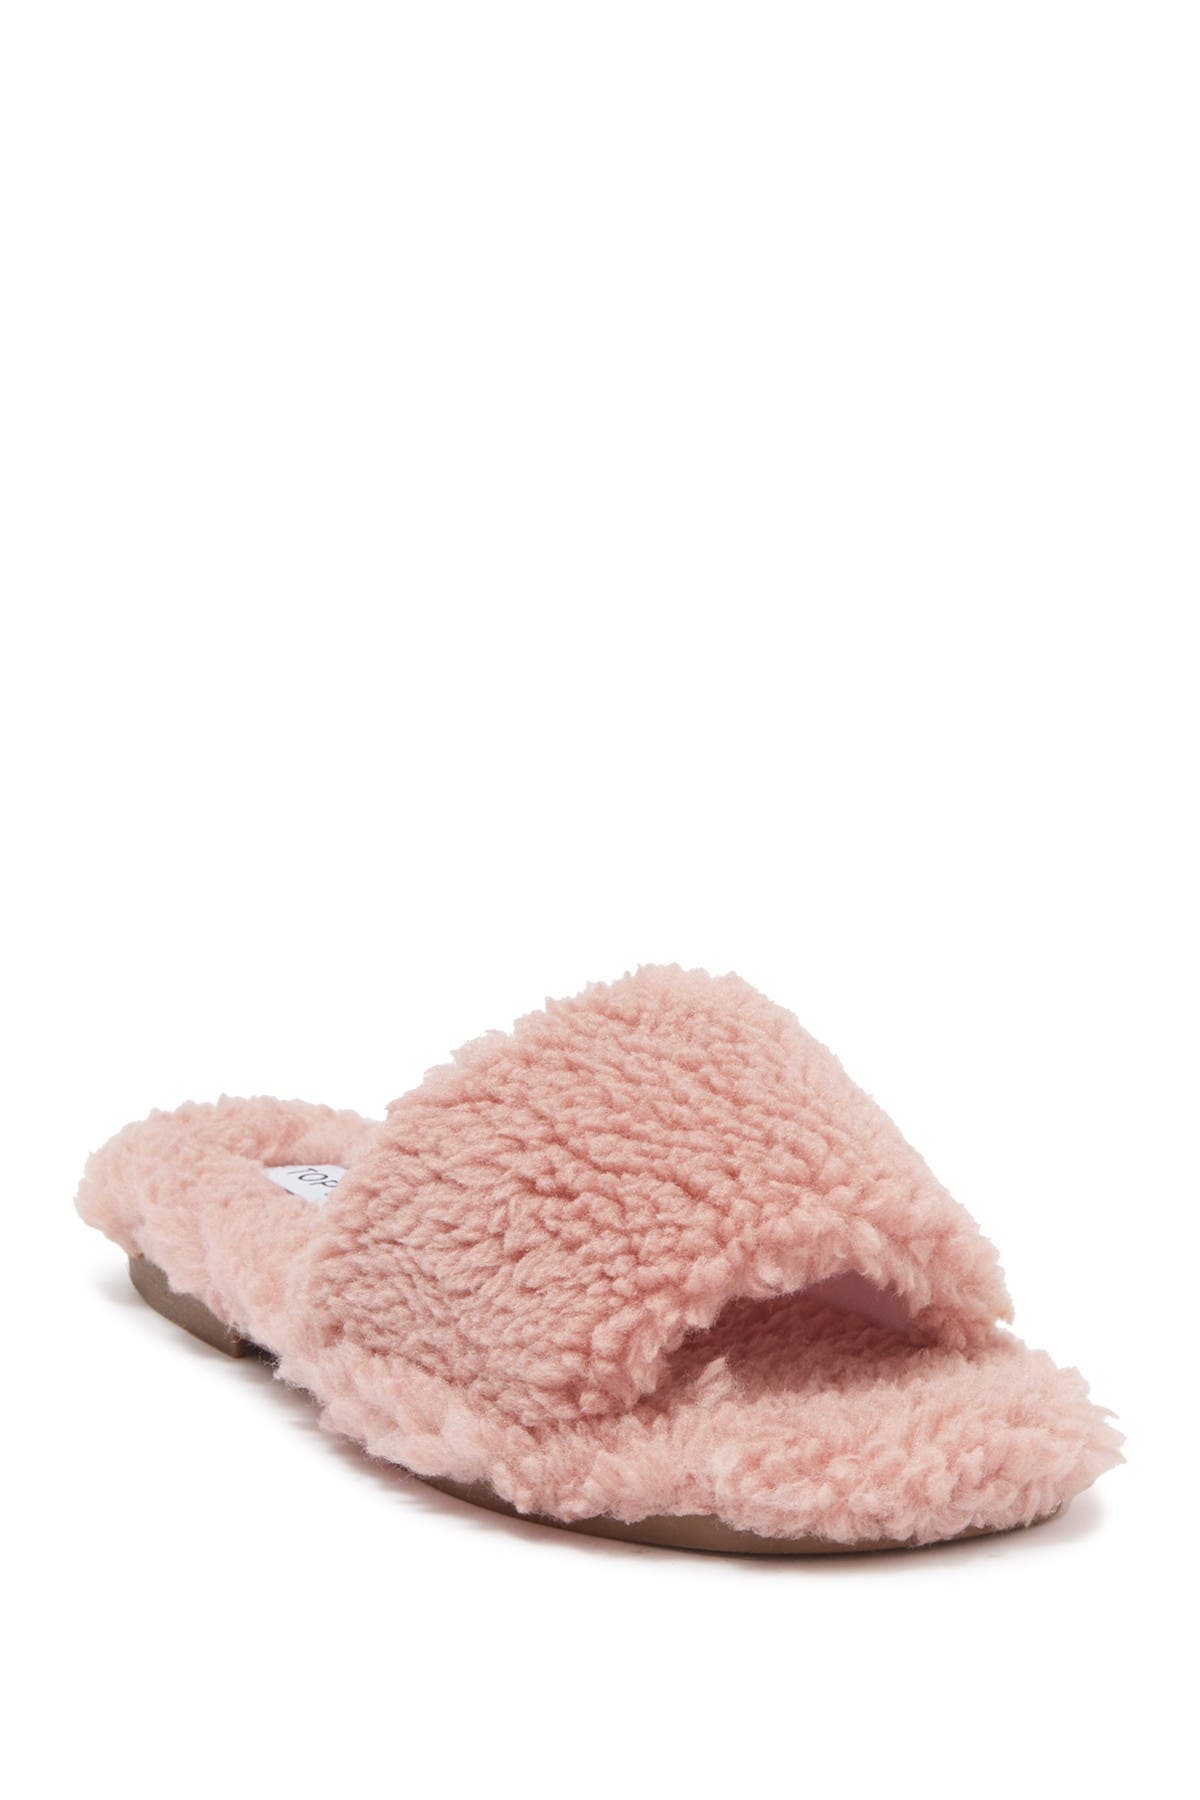 belk dearfoam slippers